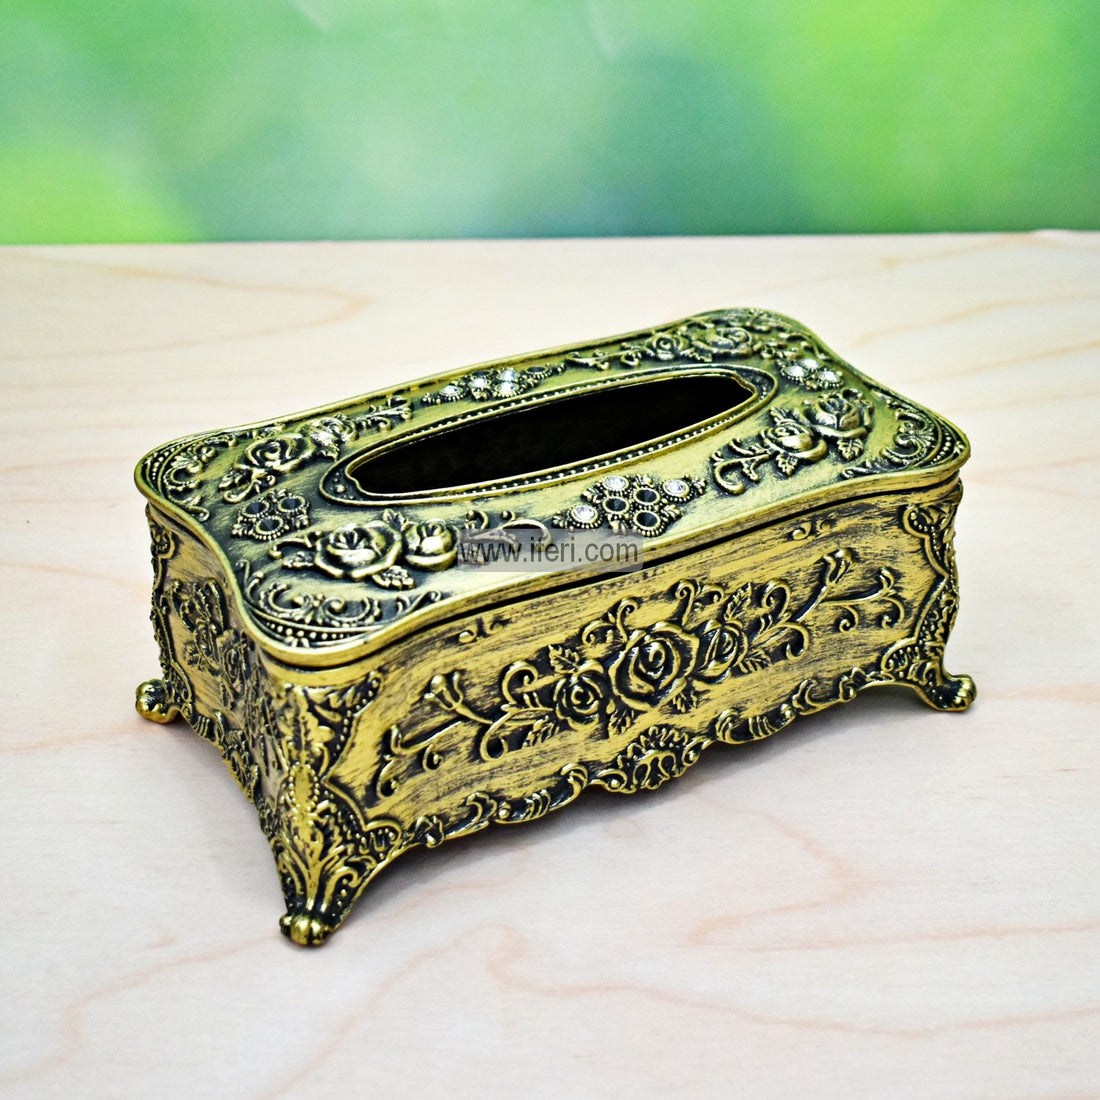 Buy Decorative Fiber Tissue Box through online from iferi.com